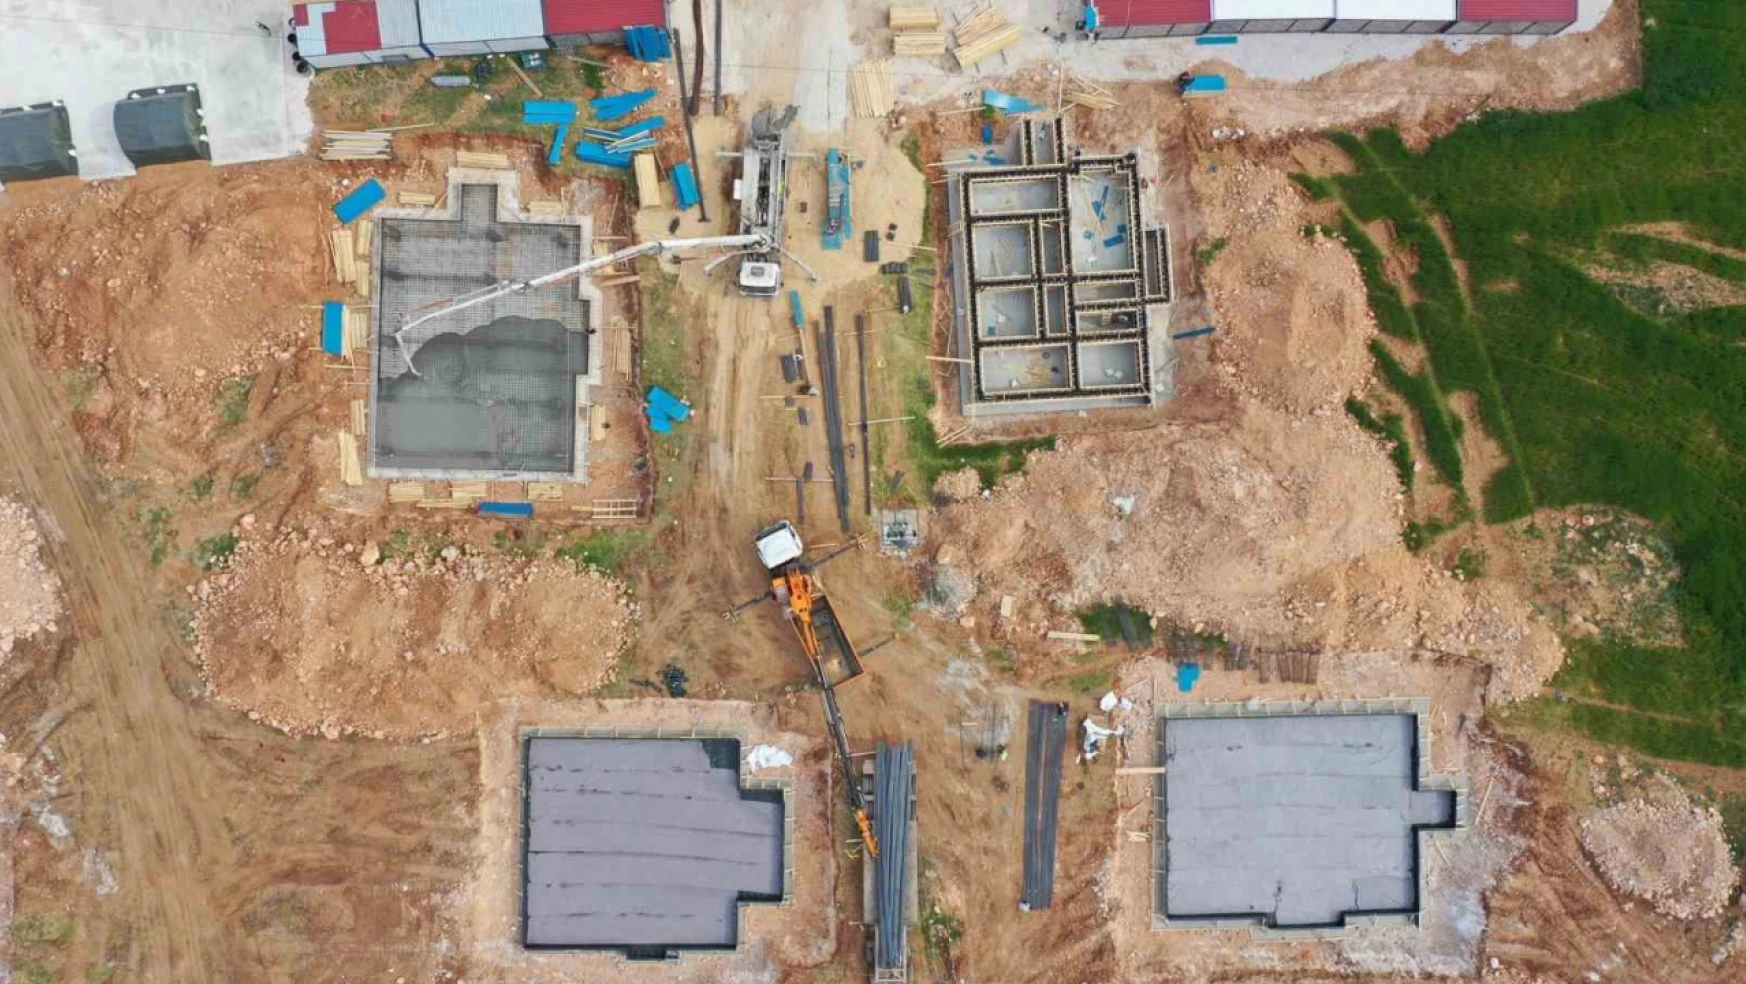 İkinci depremin merkezi Elbistan'da köy evlerinin temelleri yükseliyor